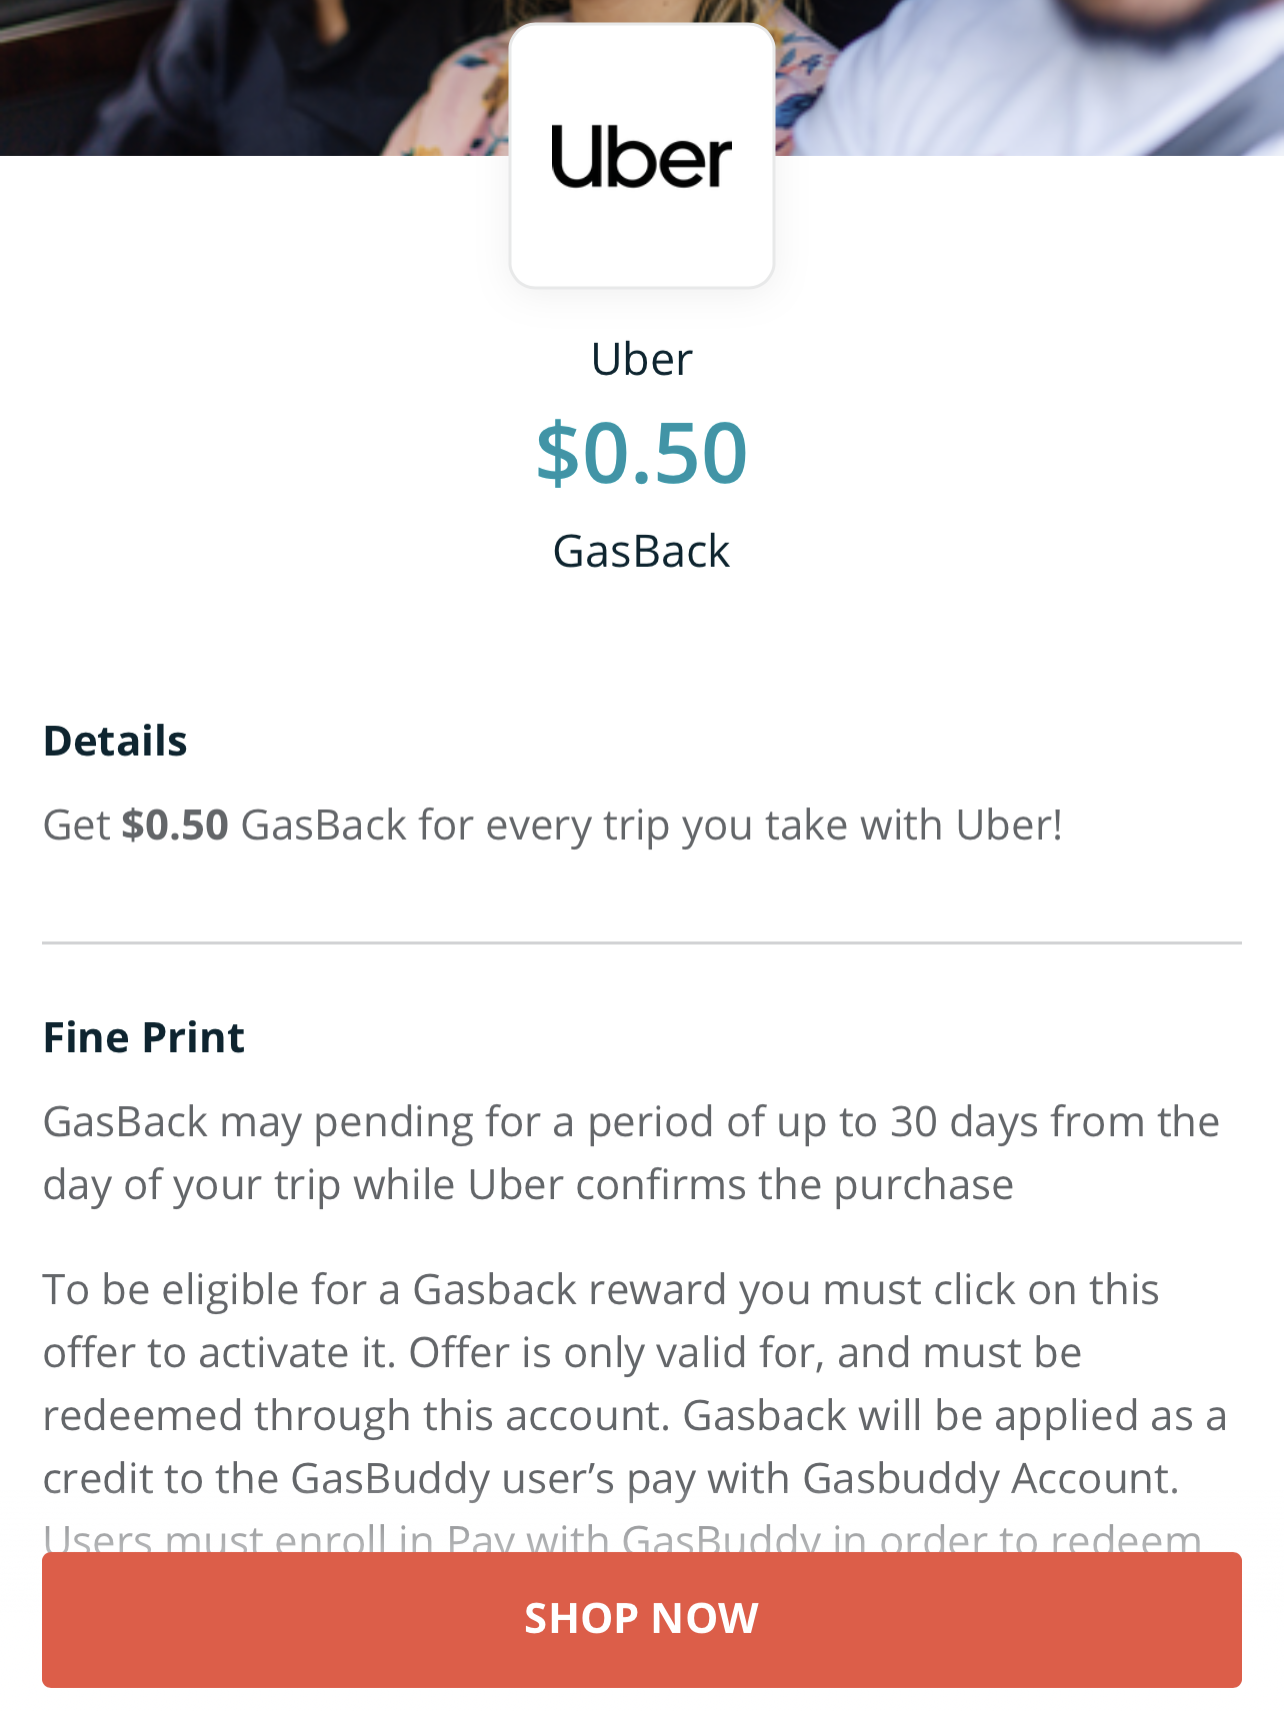 gasbuddy trip planner app